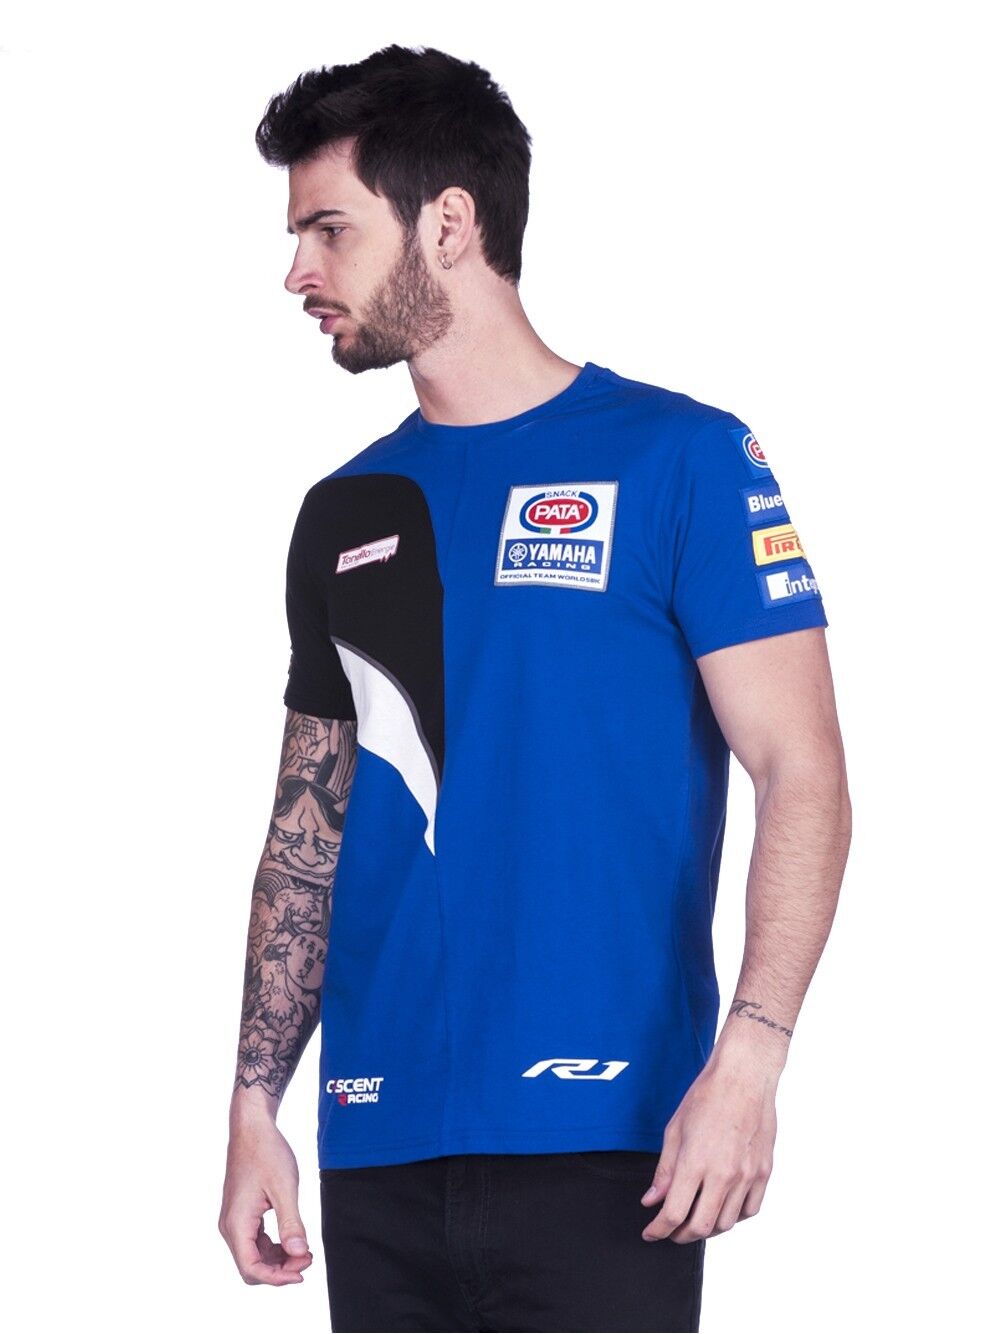 Official Cresent Pata Yamaha Racing Team T Shirt - 17 37021